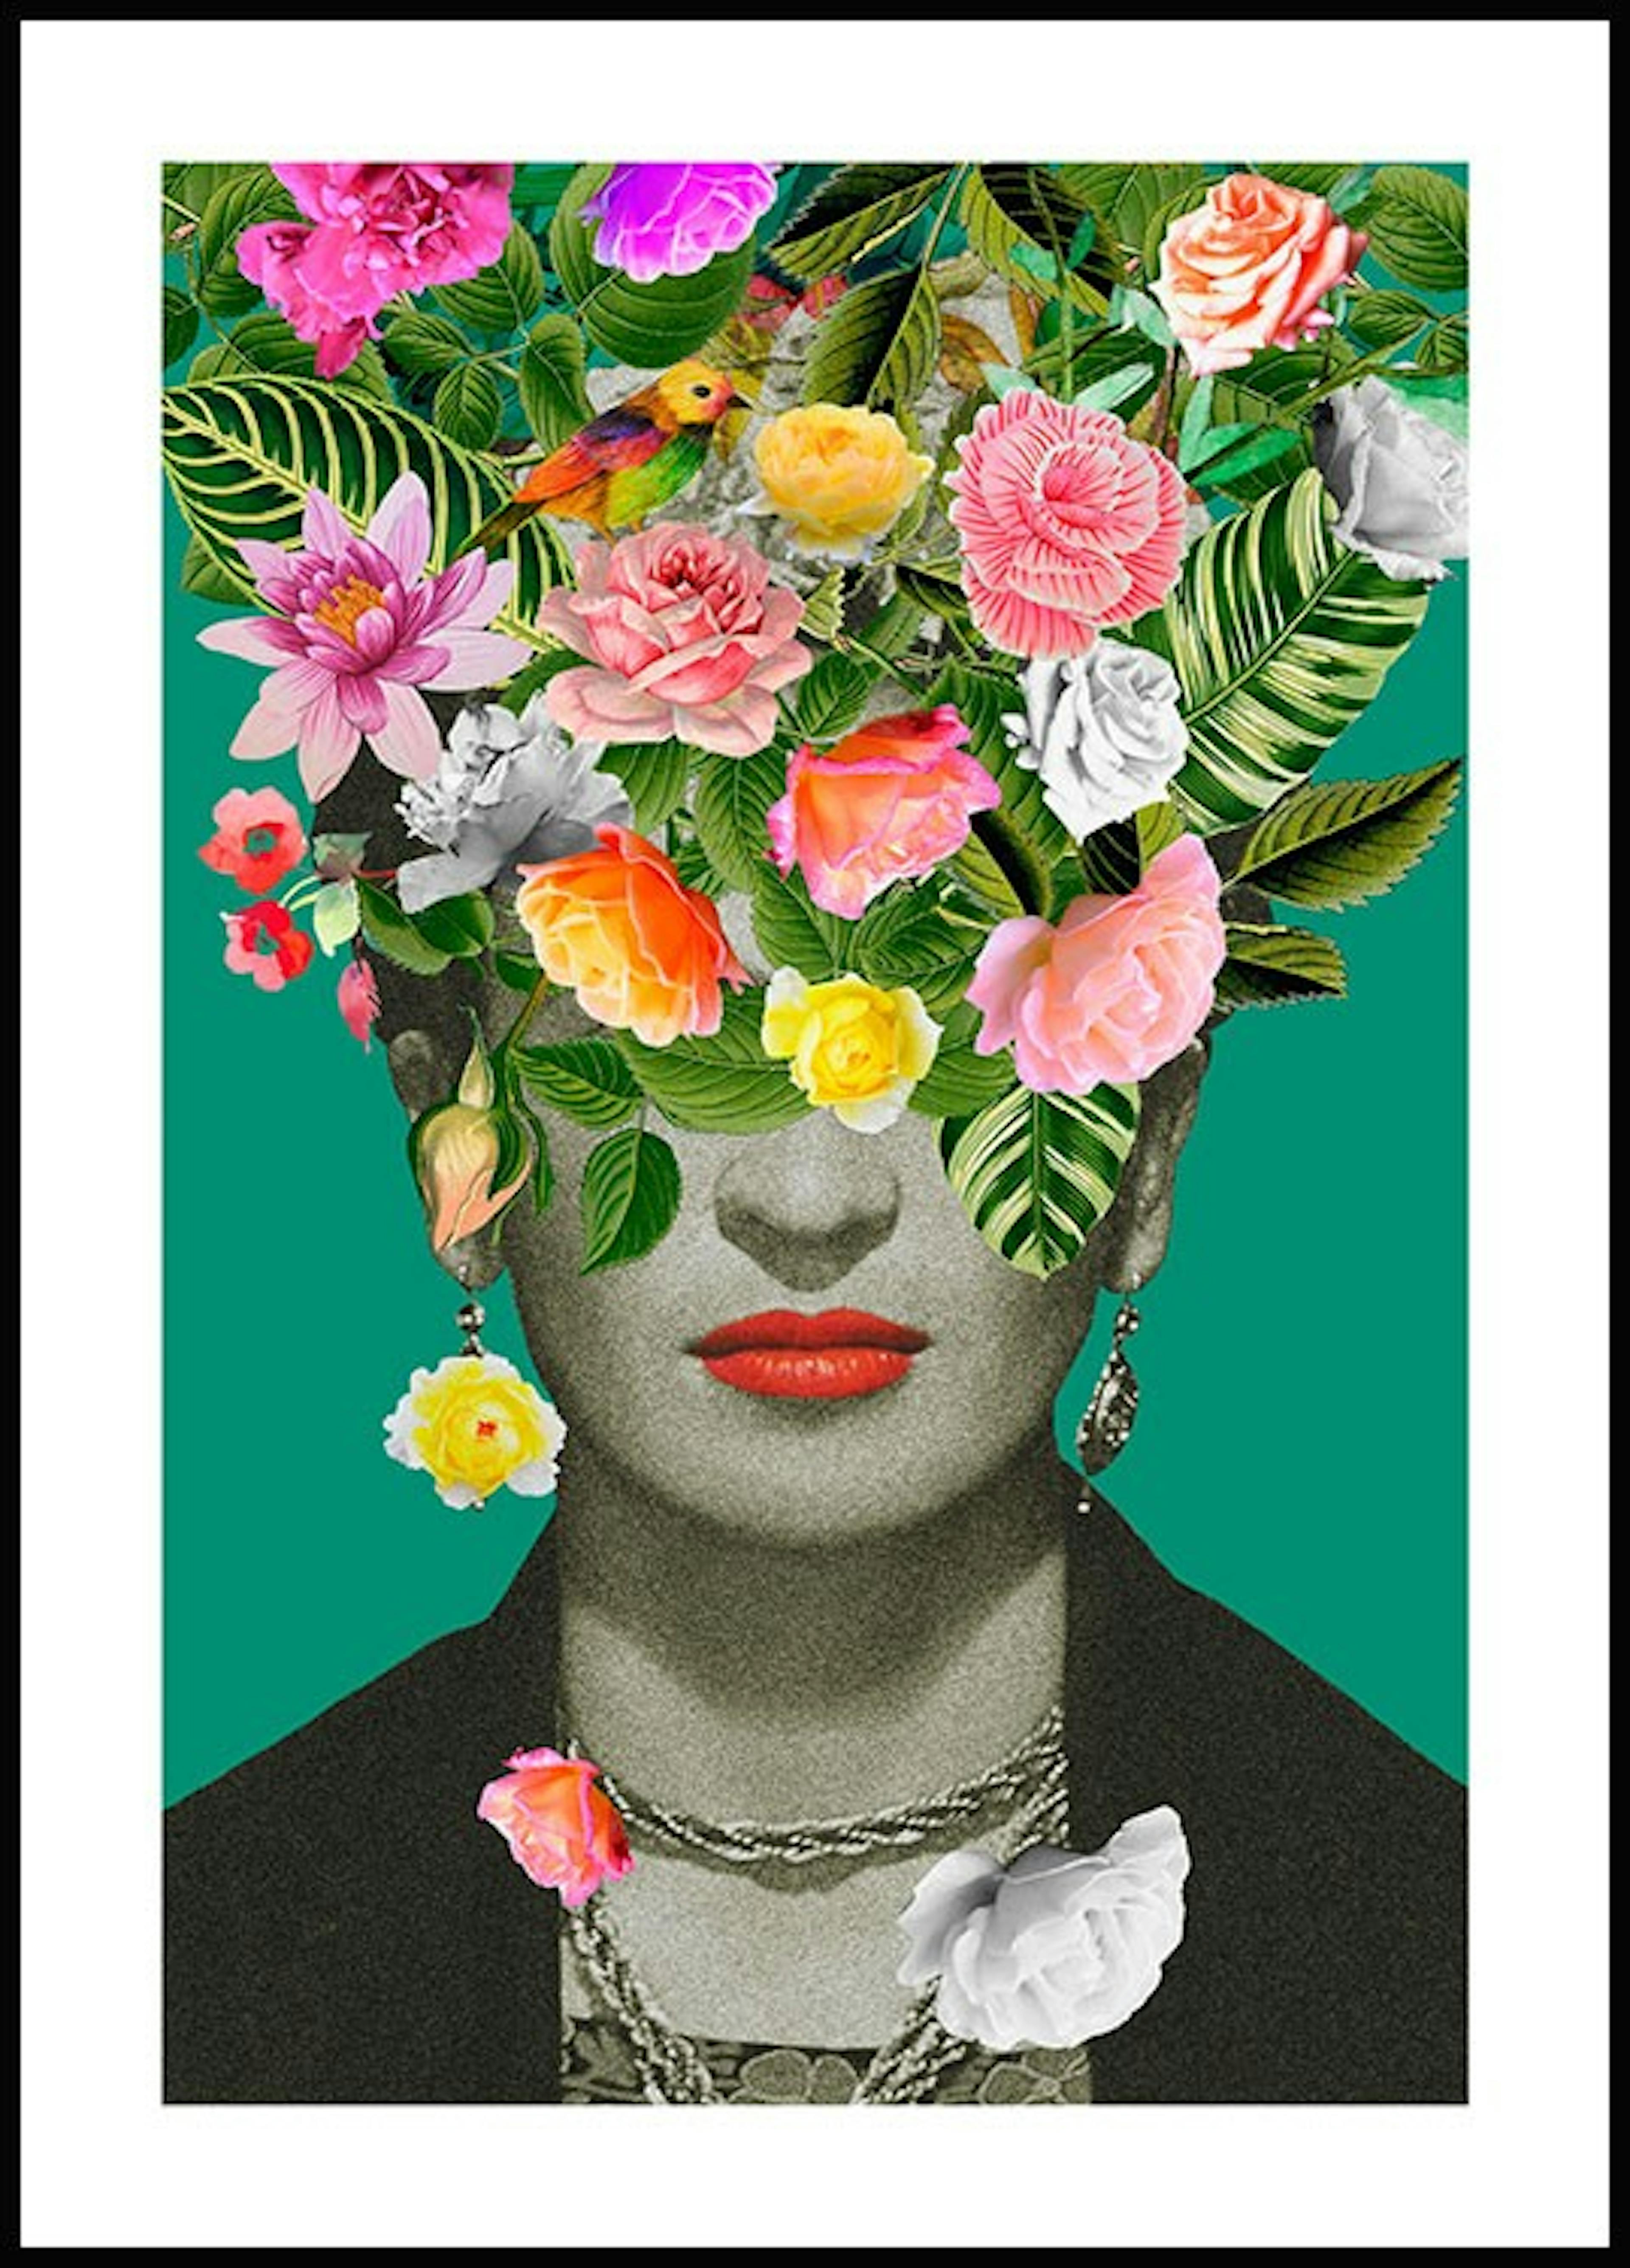 Frida floral Poster 0